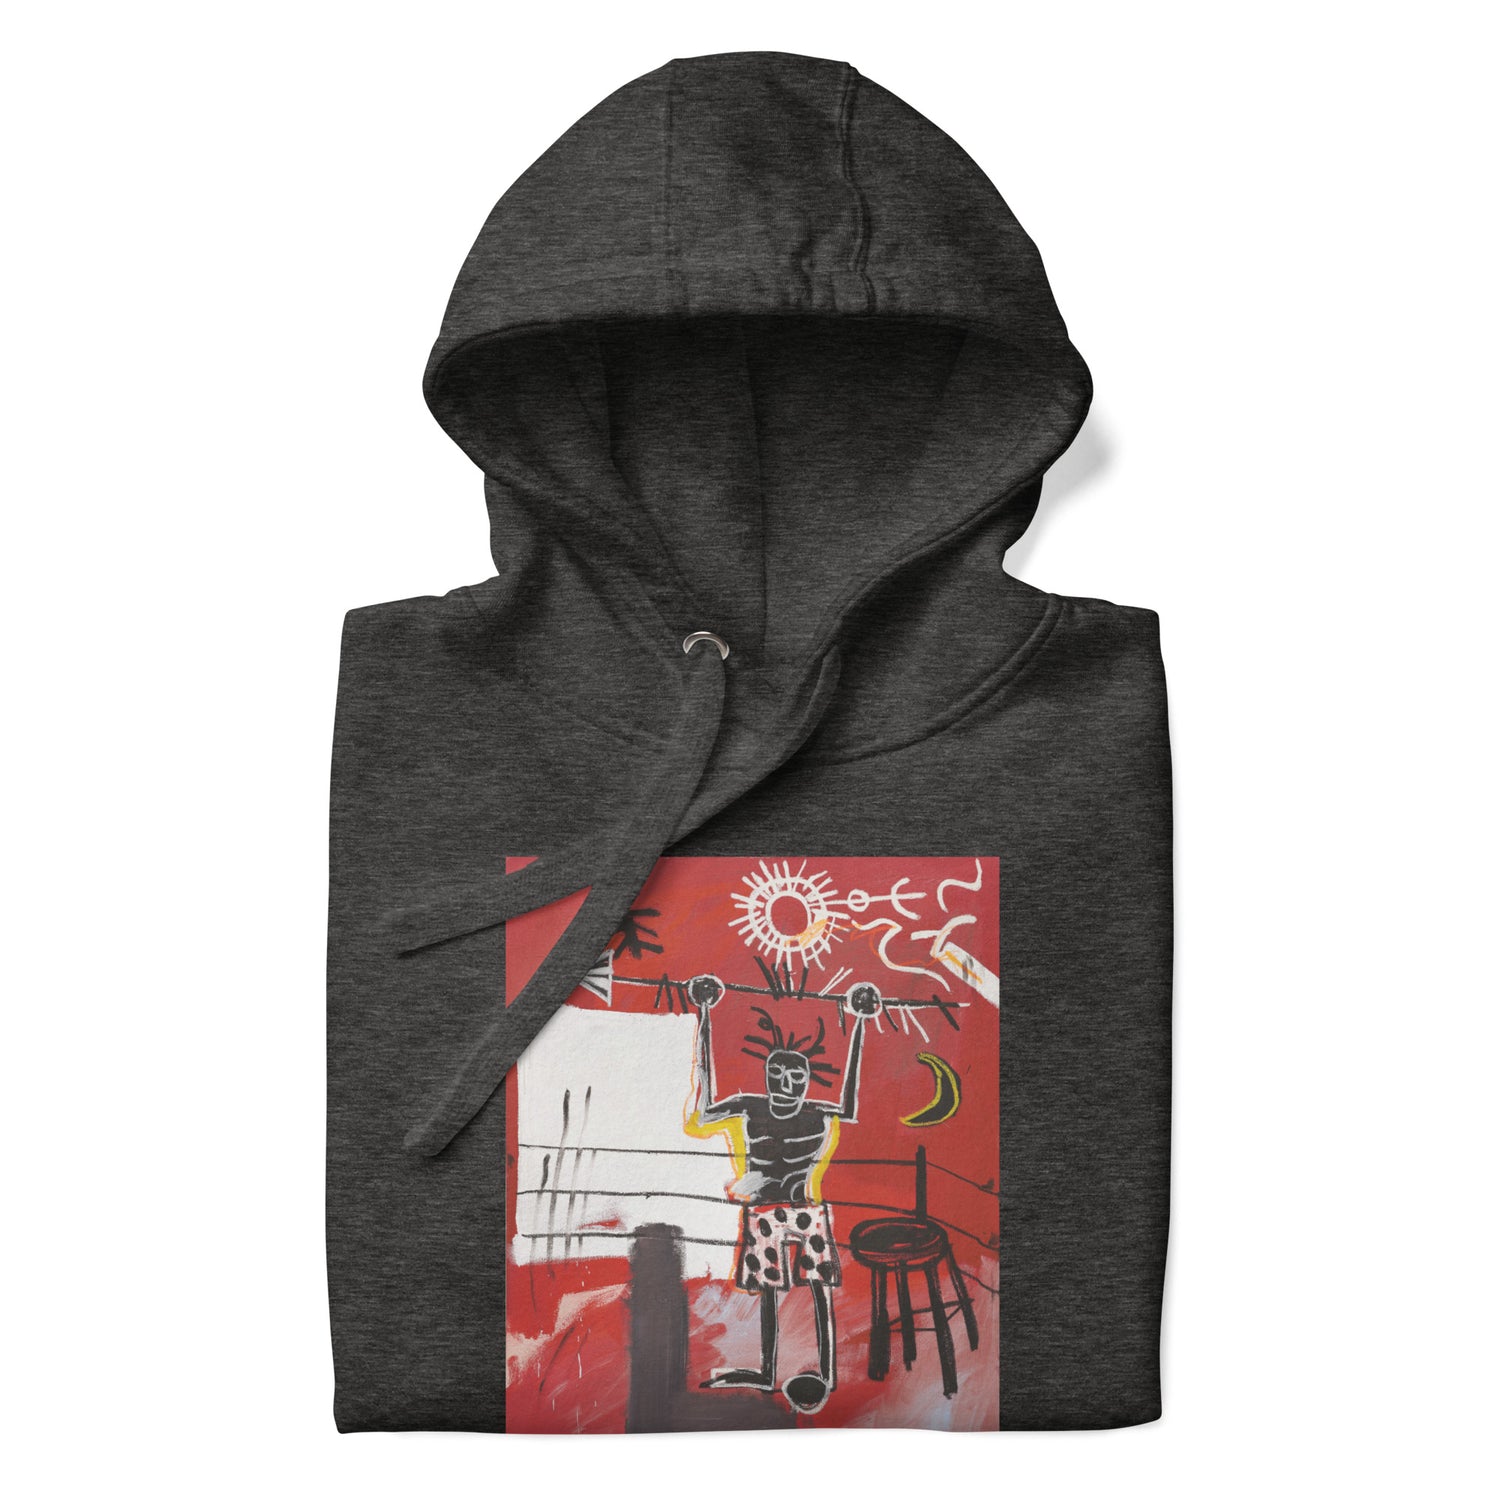 Jean-Michel Basquiat "The Ring" Artwork Printed Premium Streetwear Sweatshirt Hoodie Charcoal Grey